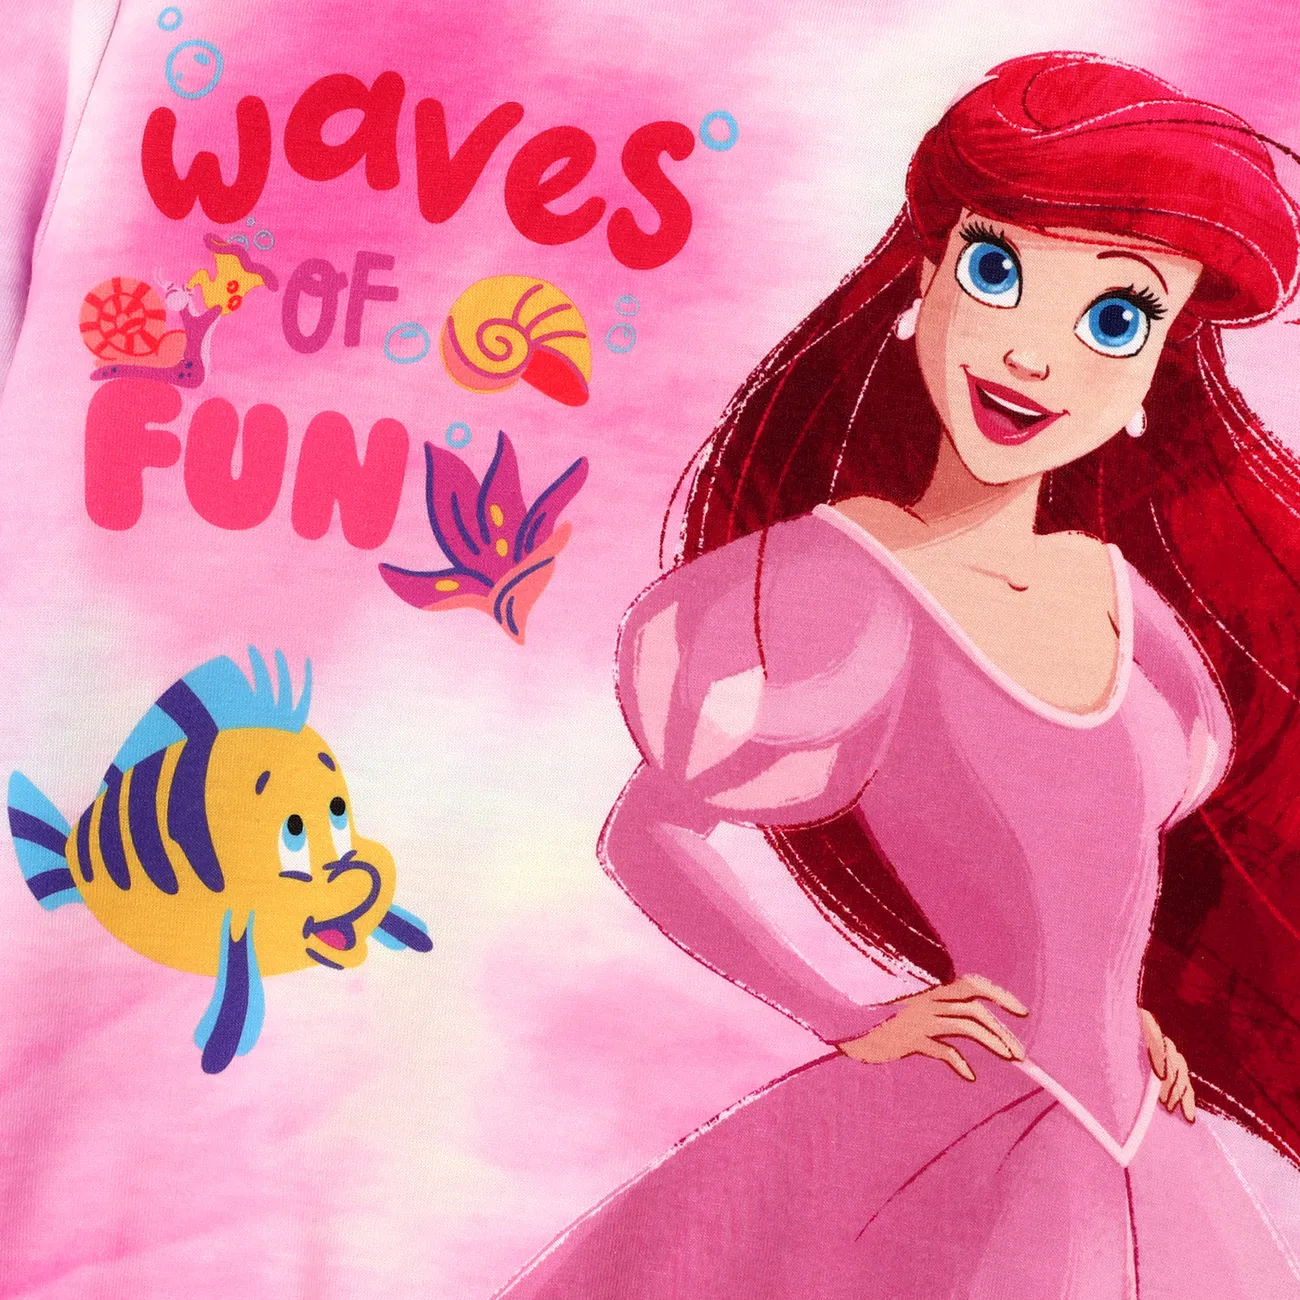 迪士尼公主幼兒/兒童女孩 2 件字元印花長袖上衣和褲子套裝 粉色 big image 1